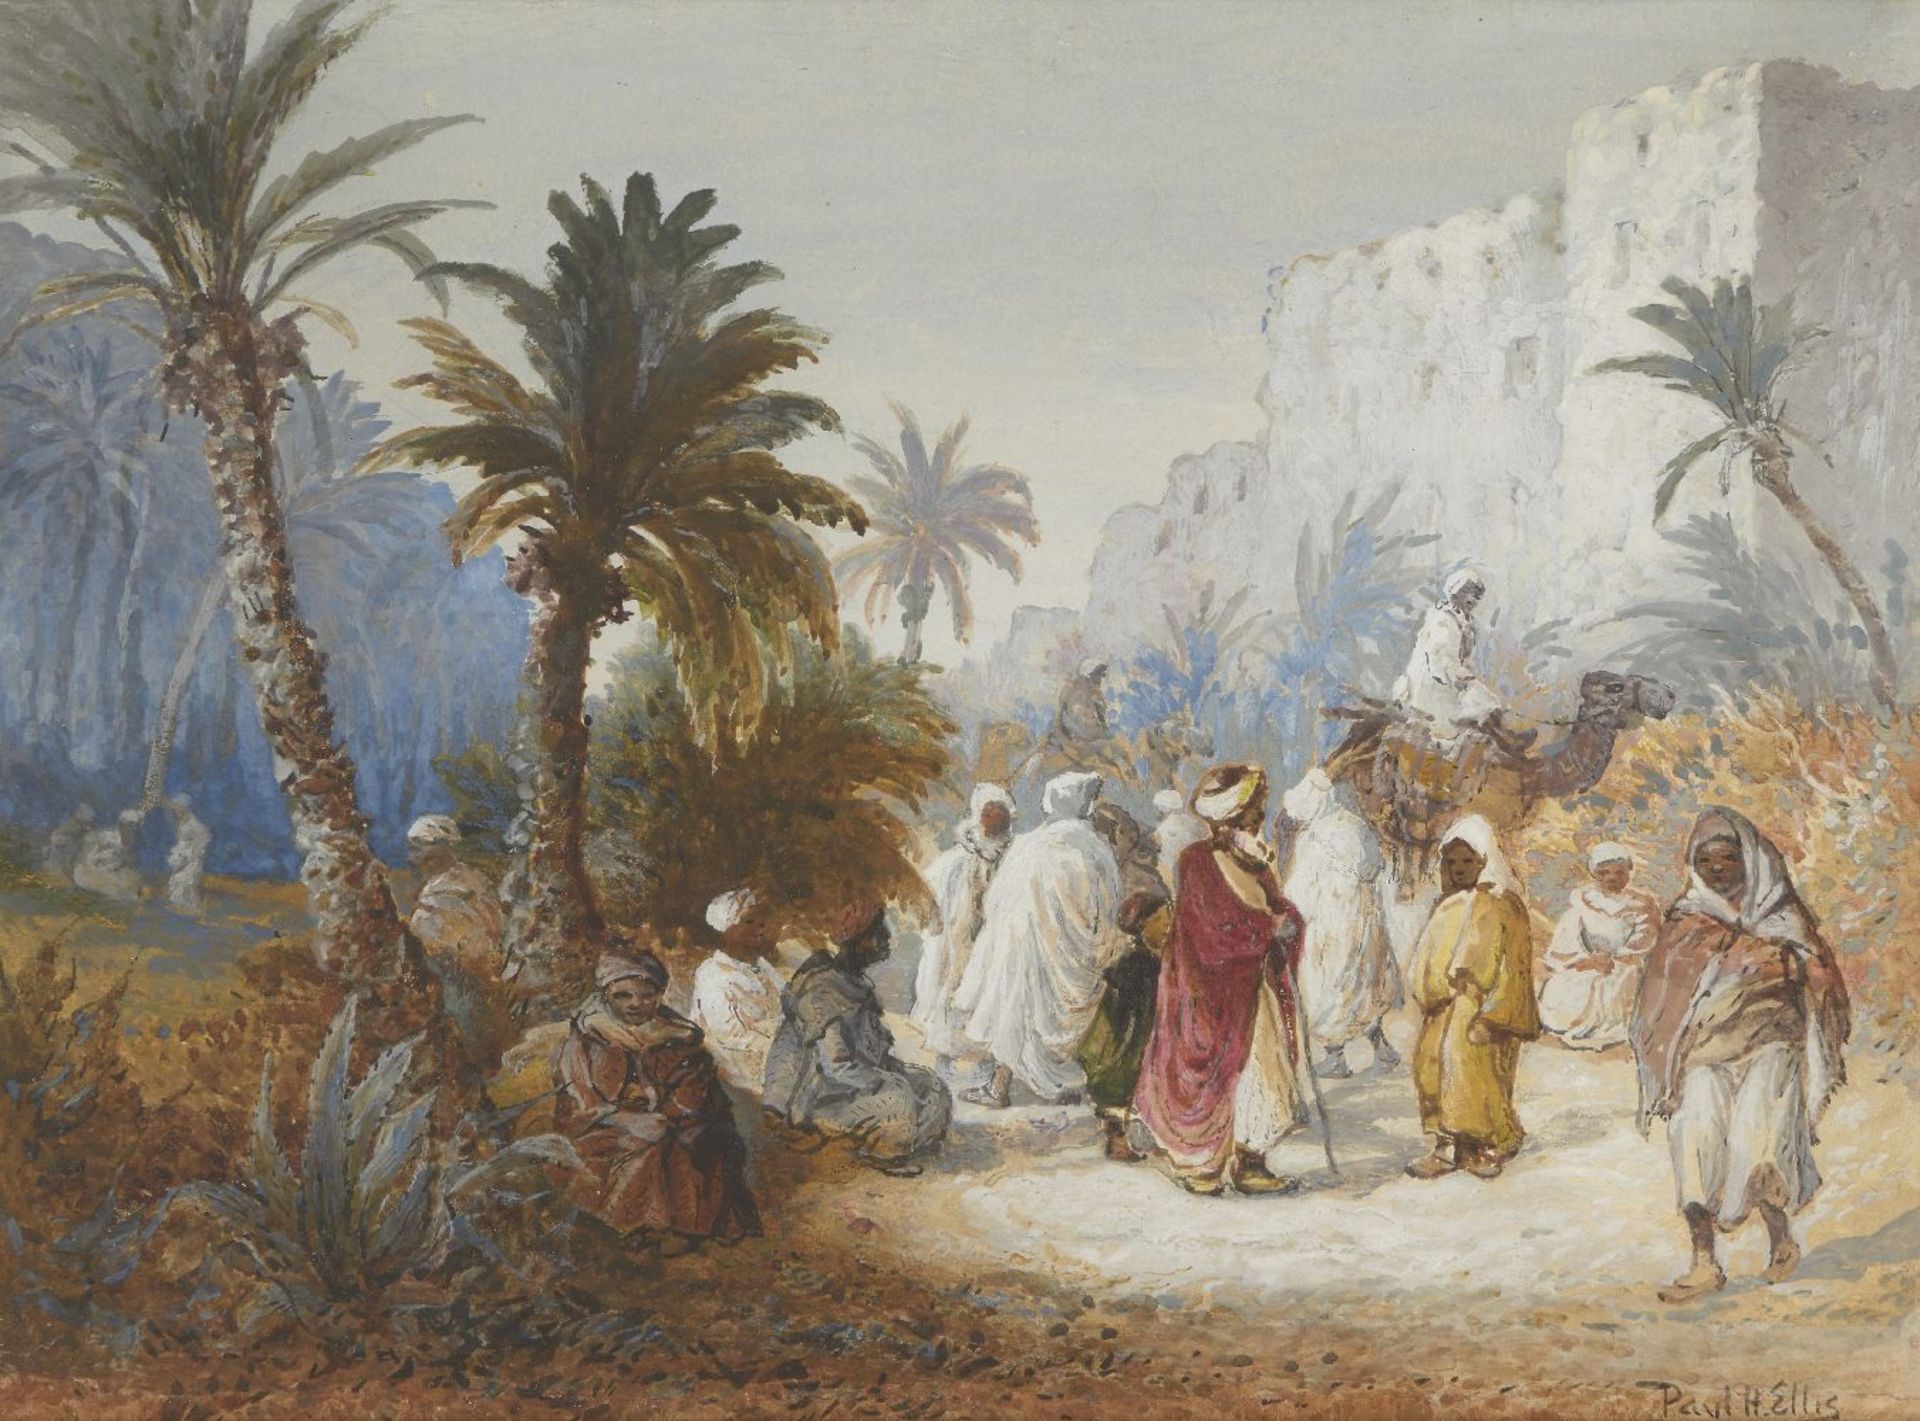 Paul H Ellis, British act. 1882-1908- Lane Scene, Bisrere, Algeria; watercolour, signed, 27x37.5cm